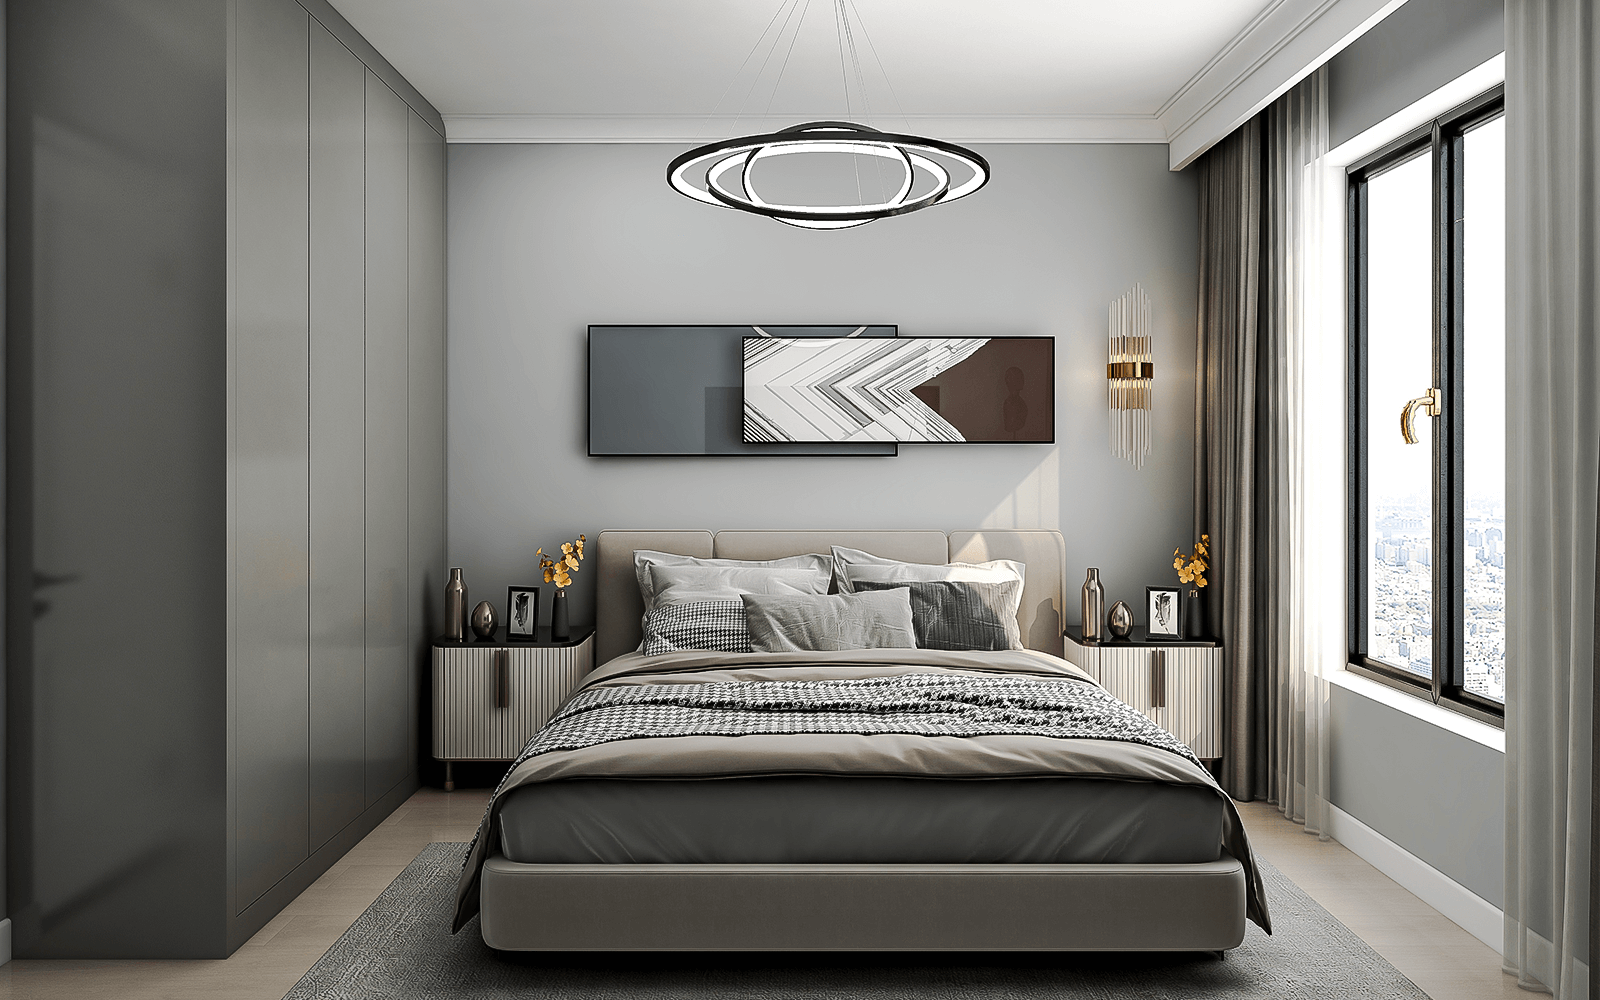 主卧的吊灯依然选了圆环款式，与客厅保持一致更和谐。床头背景墙为银灰色，满满的高级感，而定制通顶衣柜则选择了石墨灰色，通过不同浓度的灰色，让空间更有层次感。